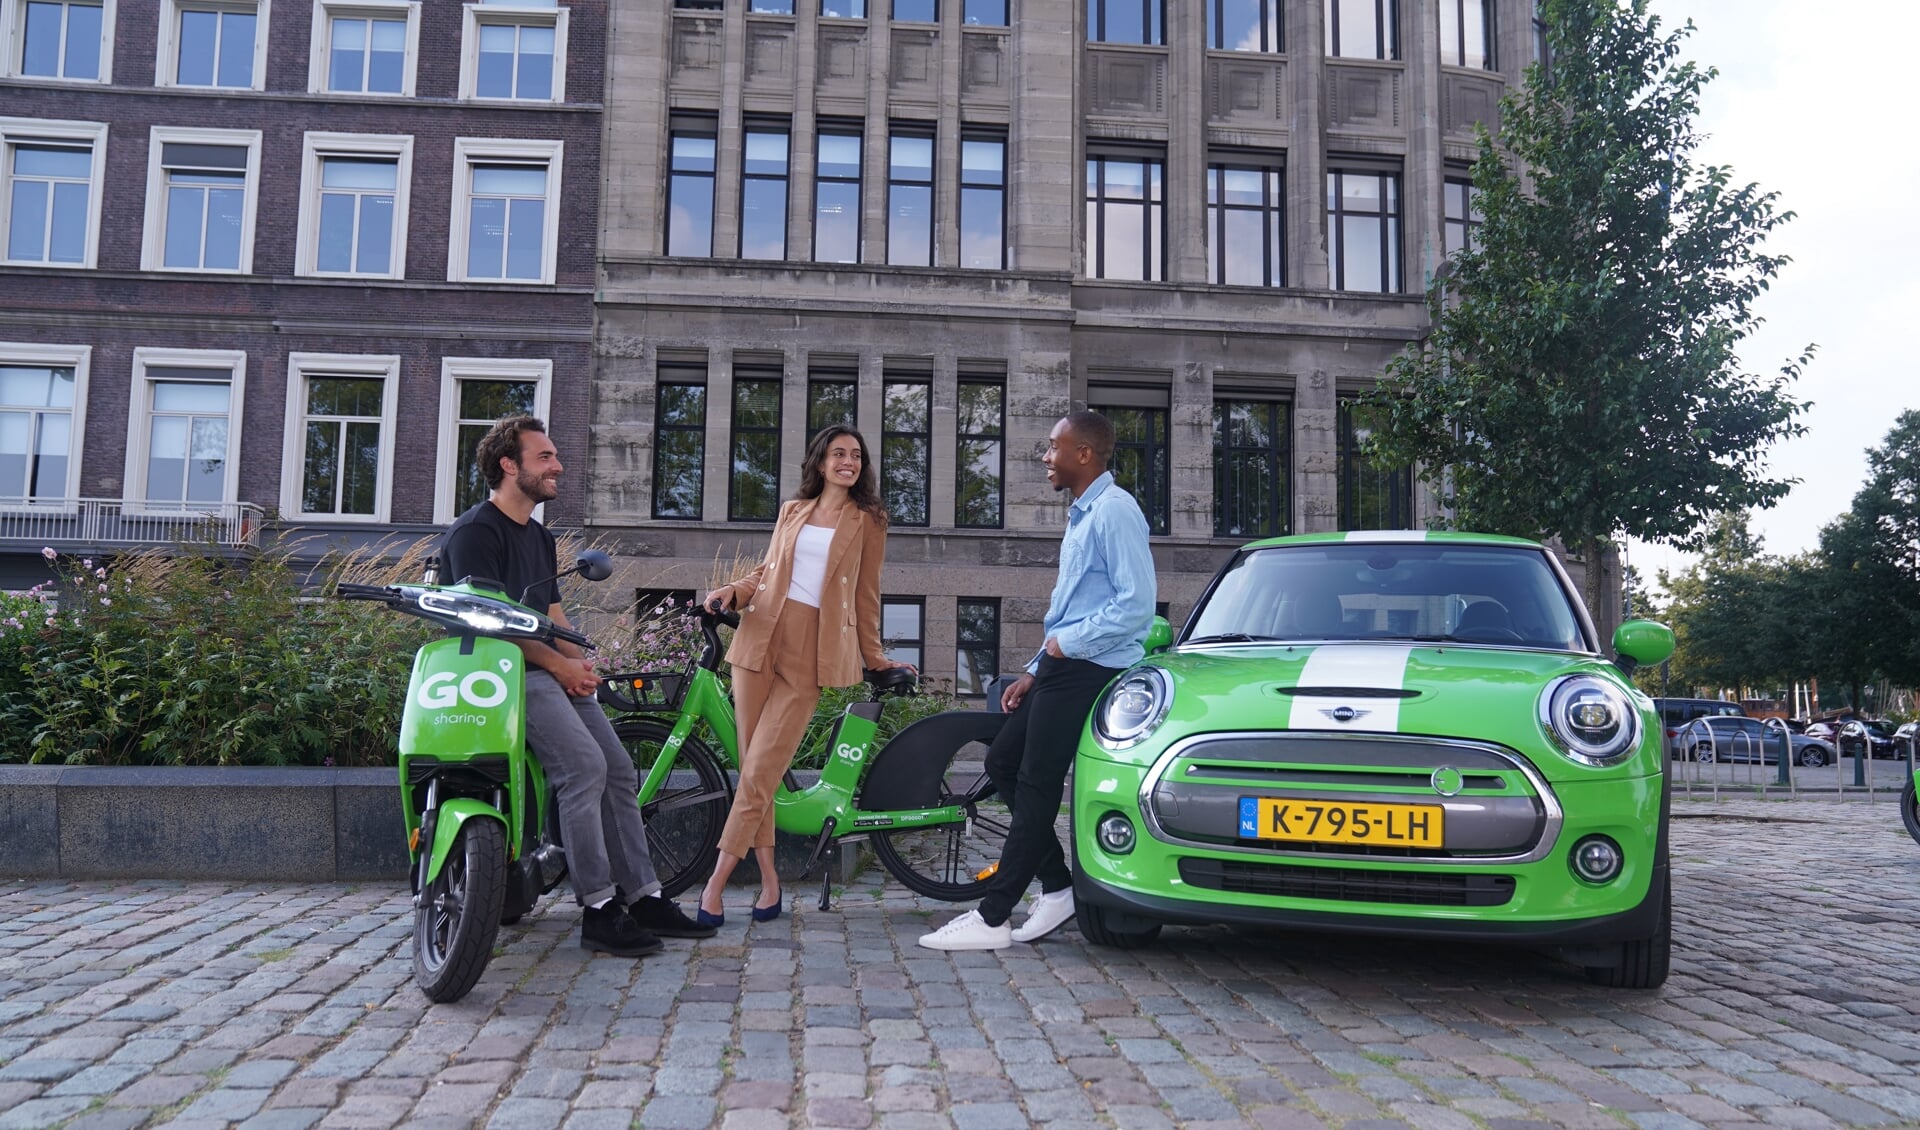 De e-scooters en e-bikes van GO Sharing zijn een gezond en duurzaam alternatief voor ritjes in de stad. Binnenkort introduceert het bedrijf in Den Bosch ook de elektrische deelauto.